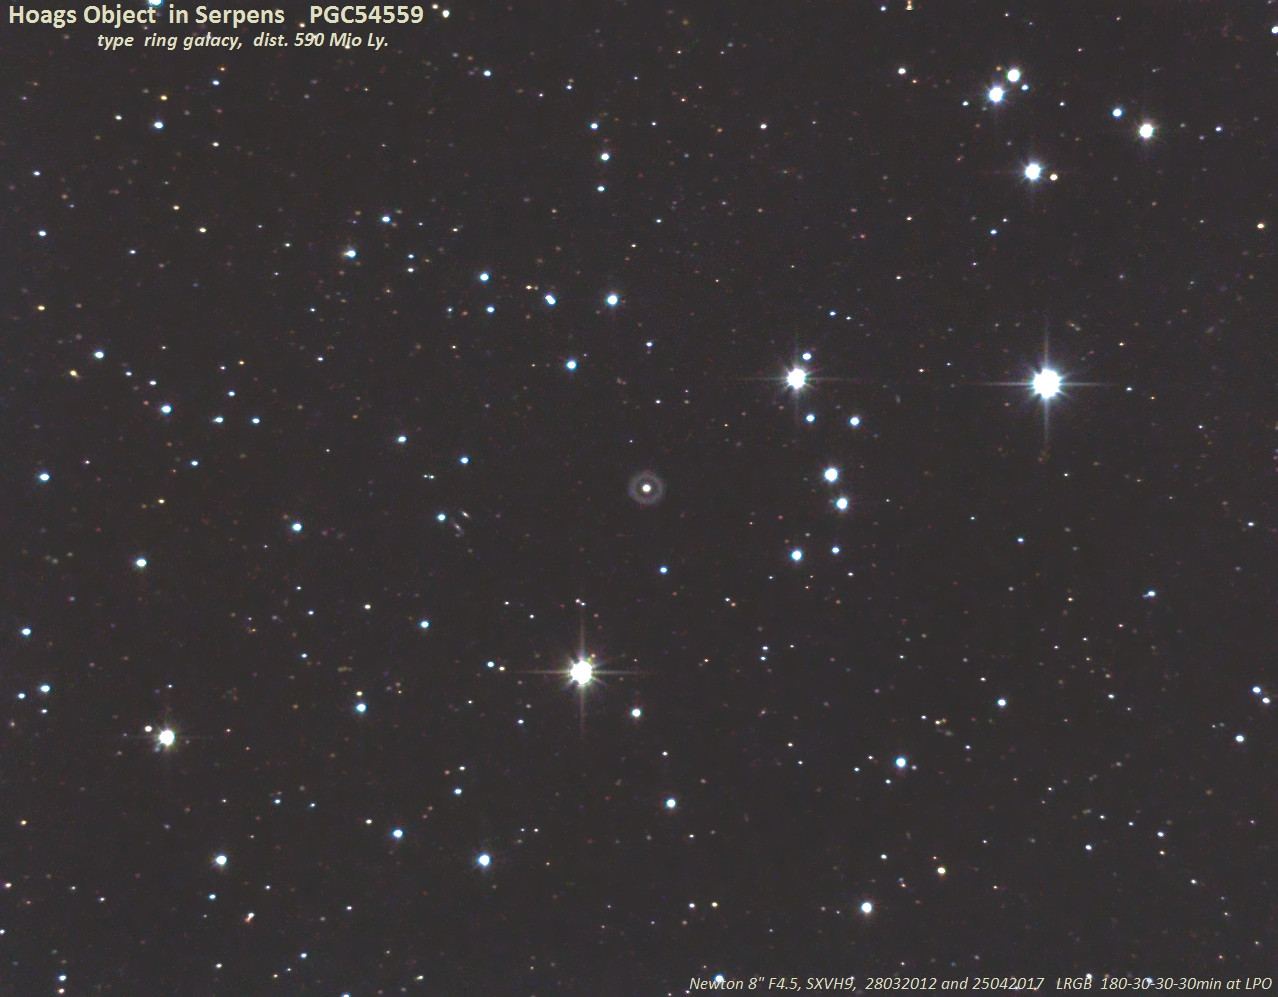 PGC 54559